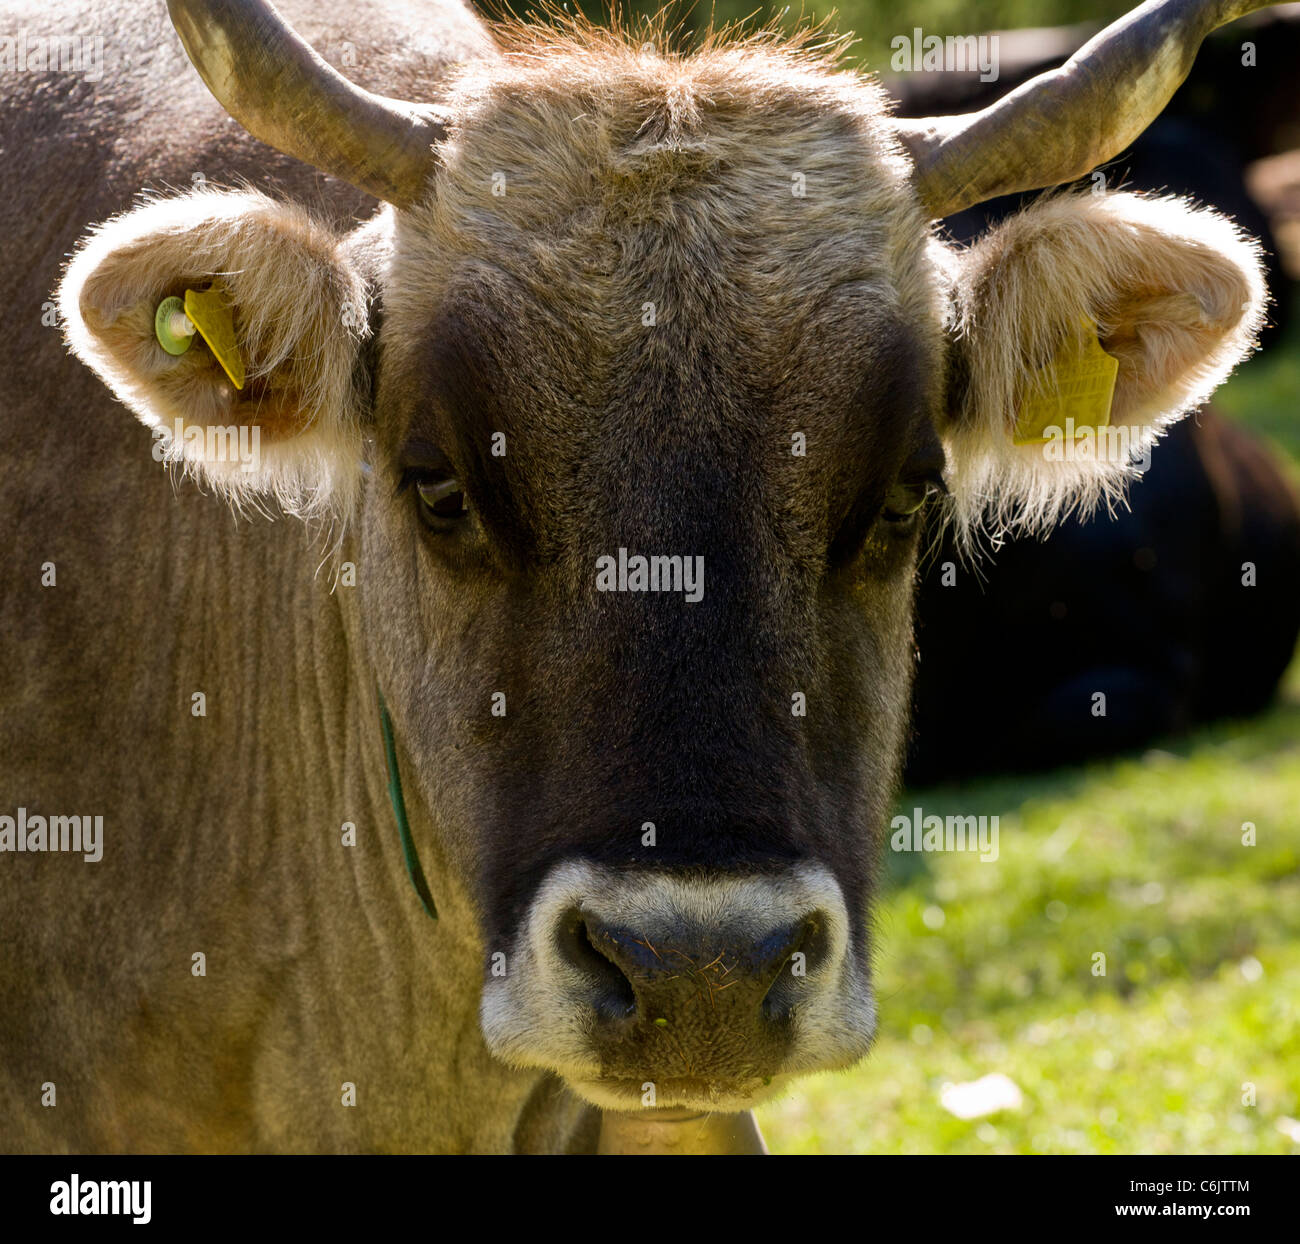 Freundliche alpine Kuh mit Kuh-Glocke und Ohr-Tags; Hochtal Engadin, Schweiz. Stockfoto